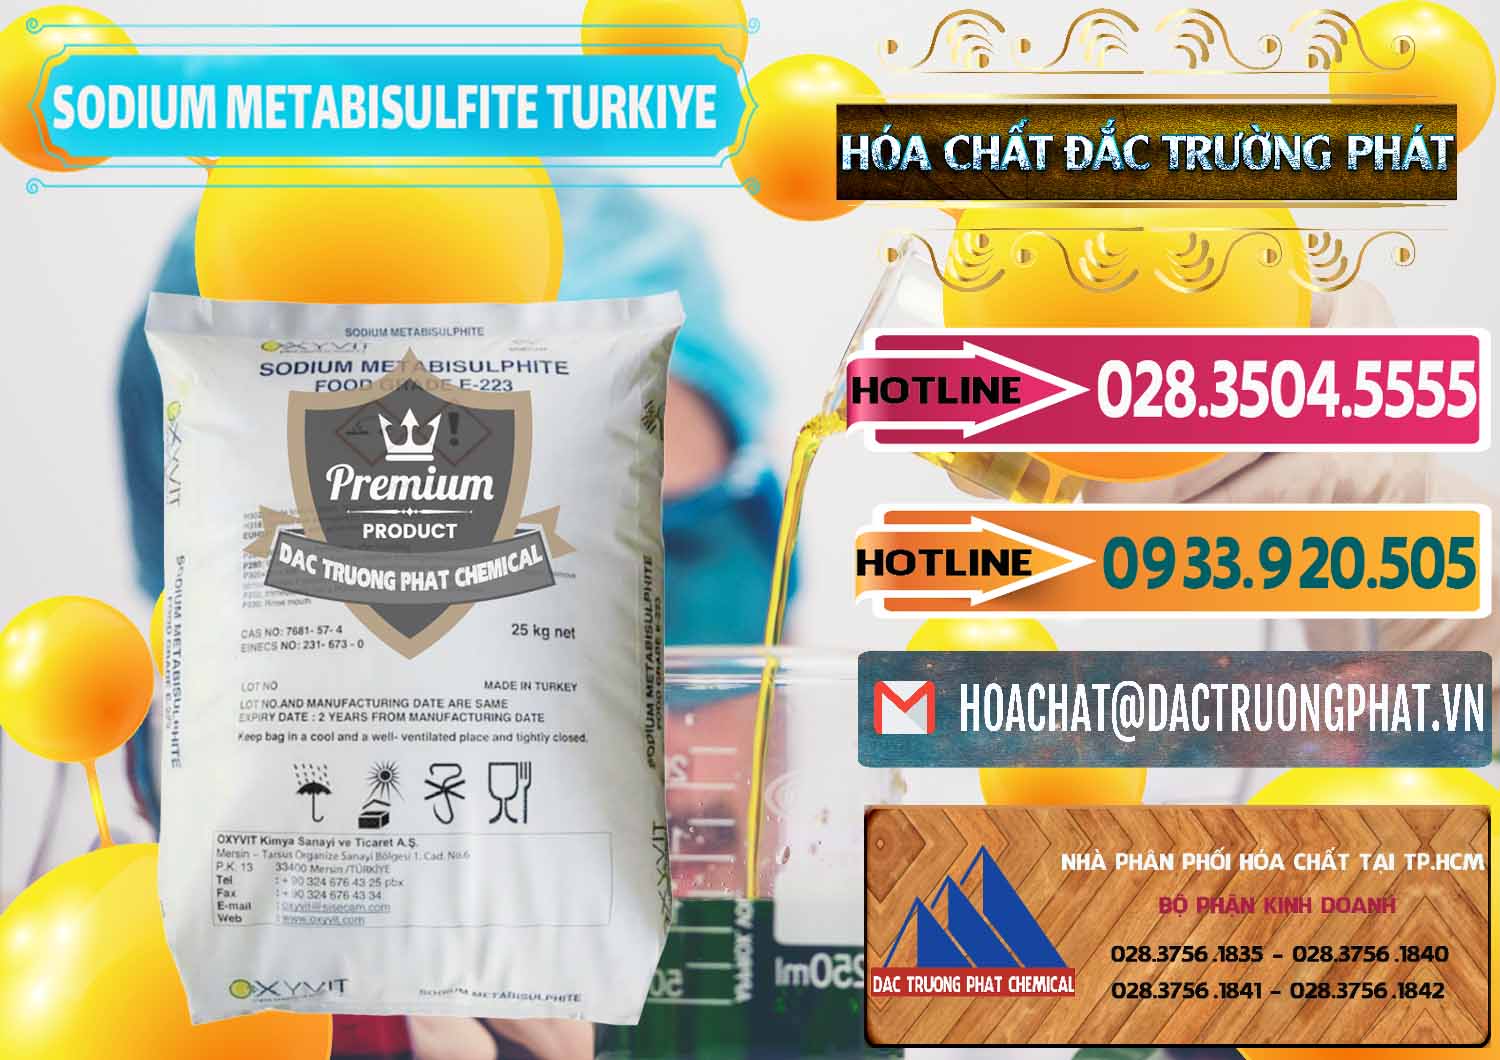 Đơn vị bán & cung cấp Sodium Metabisulfite - NA2S2O5 Food Grade E-223 Thổ Nhĩ Kỳ Turkey - 0413 - Chuyên cung cấp - phân phối hóa chất tại TP.HCM - dactruongphat.vn